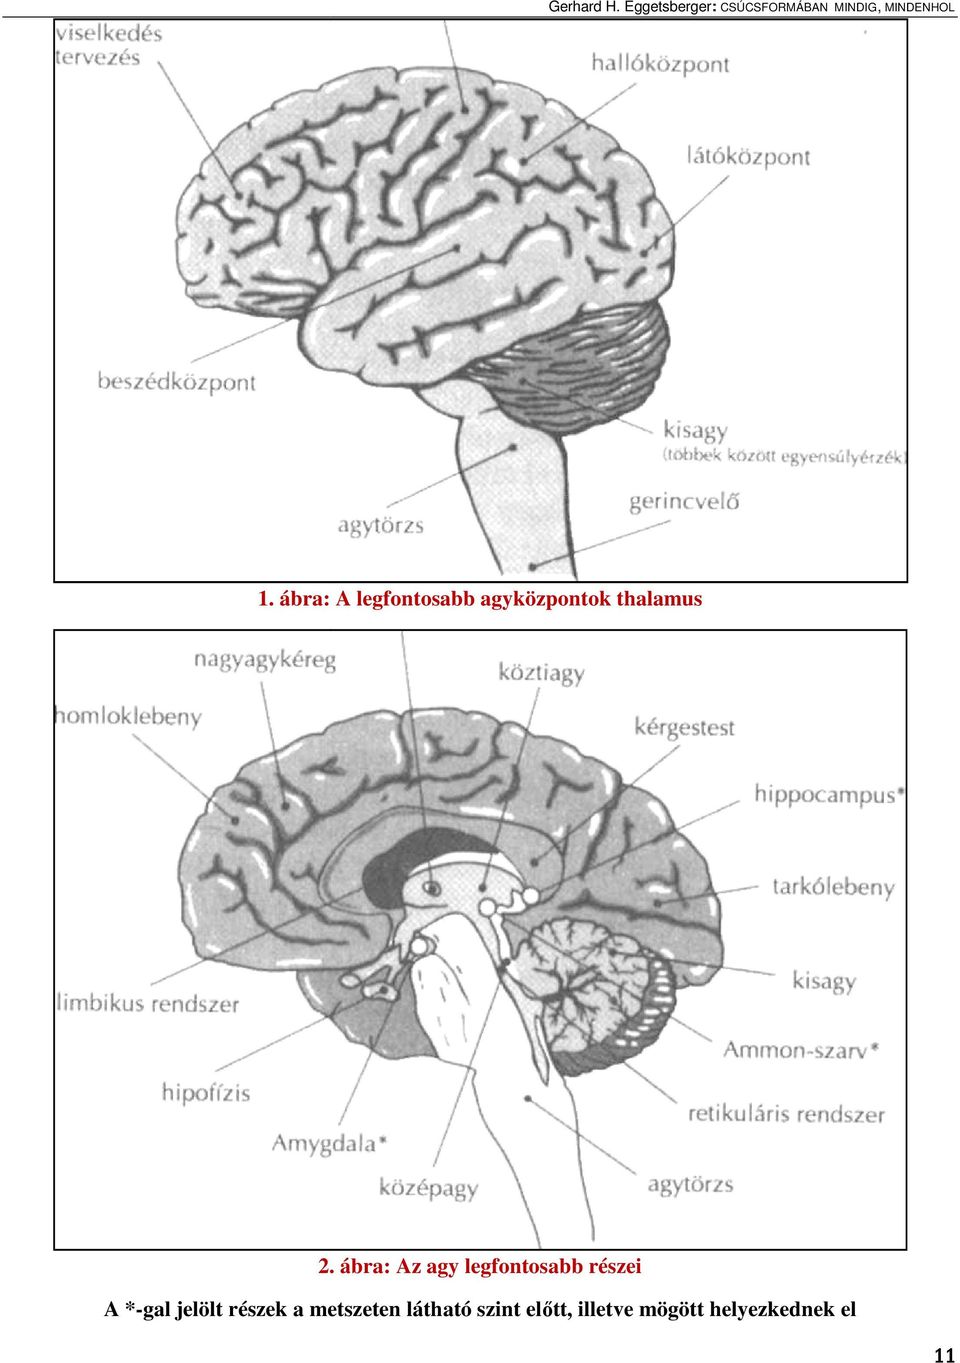 ábra: Az agy legfontosabb részei A *-gal